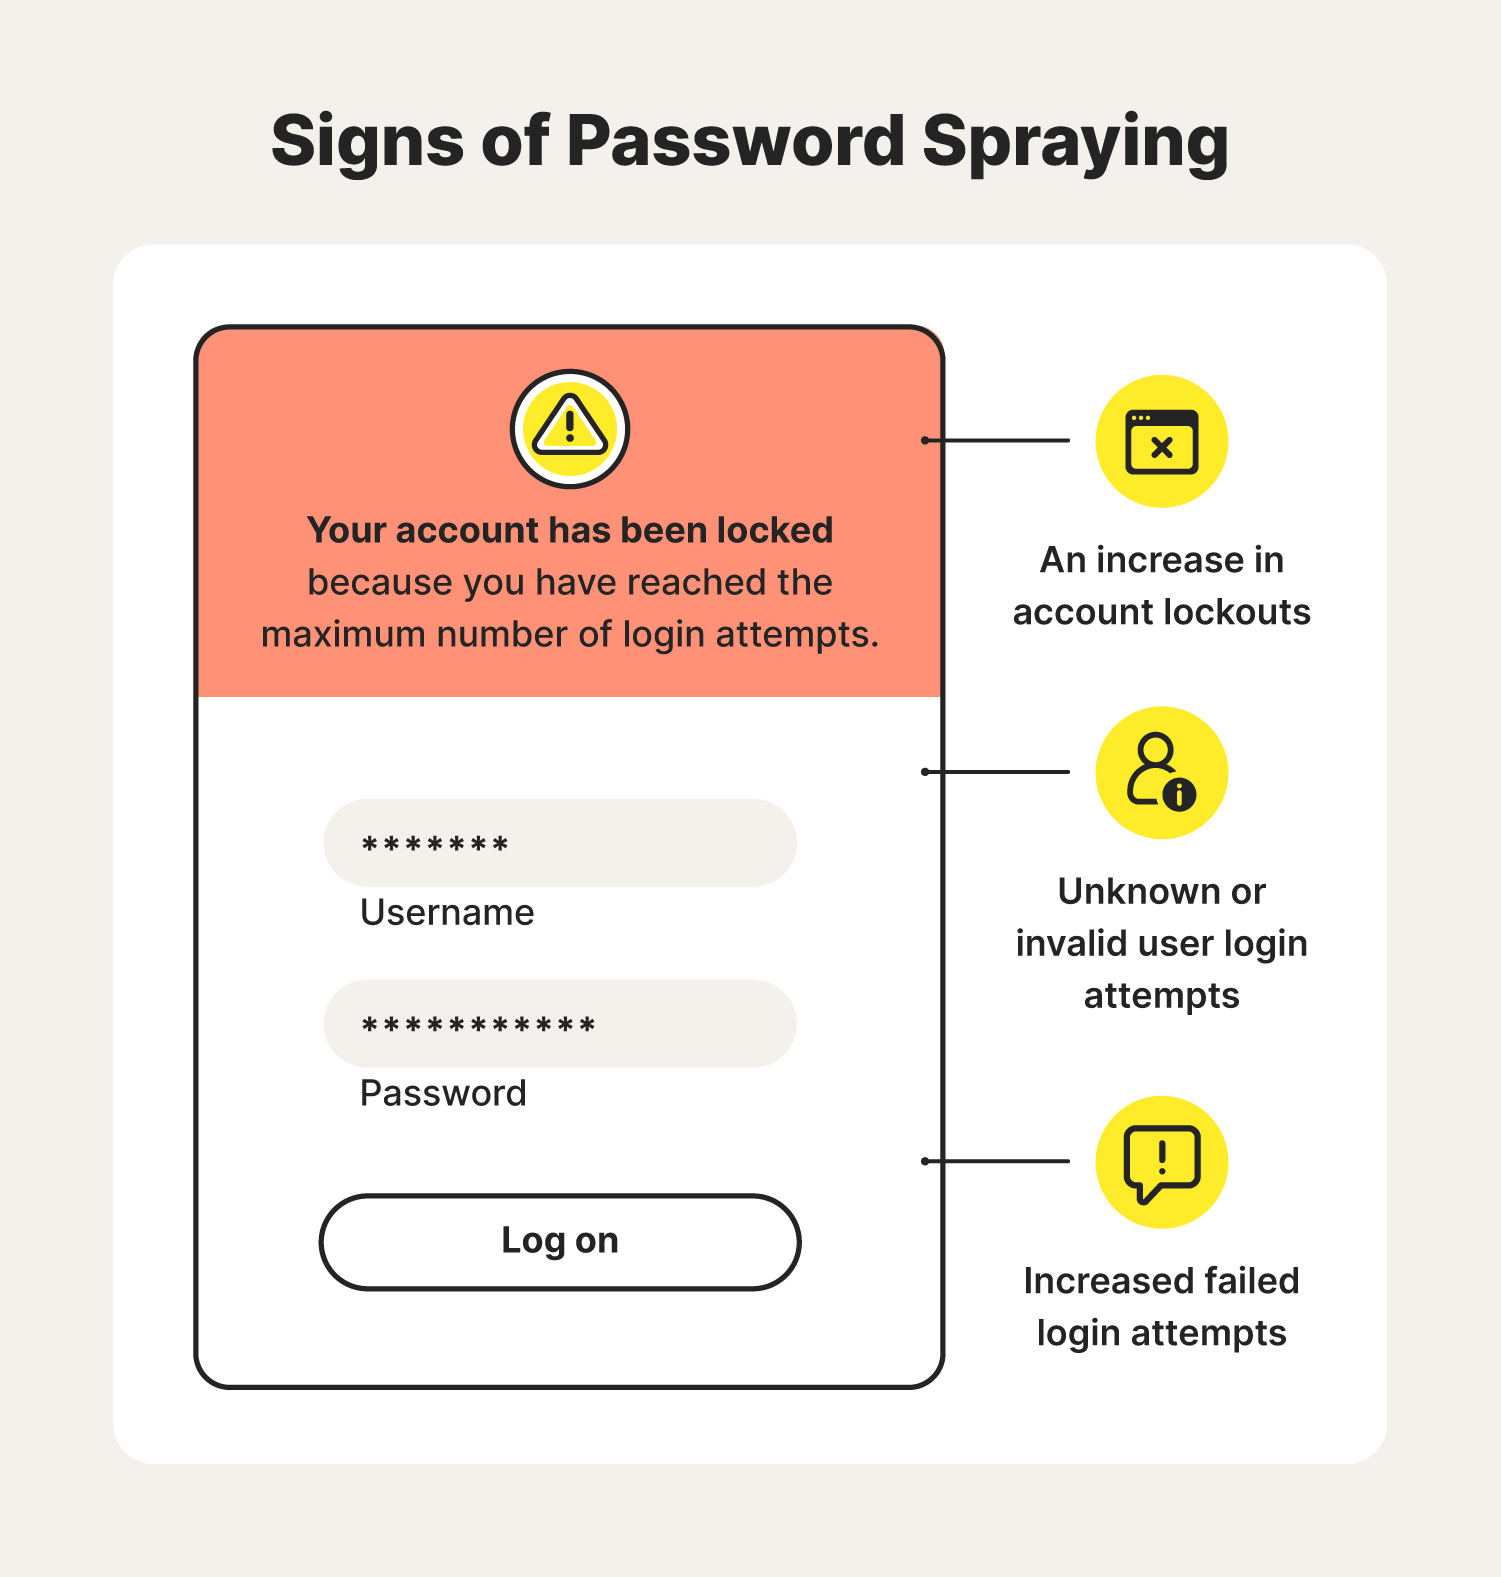 Sign of password spraying